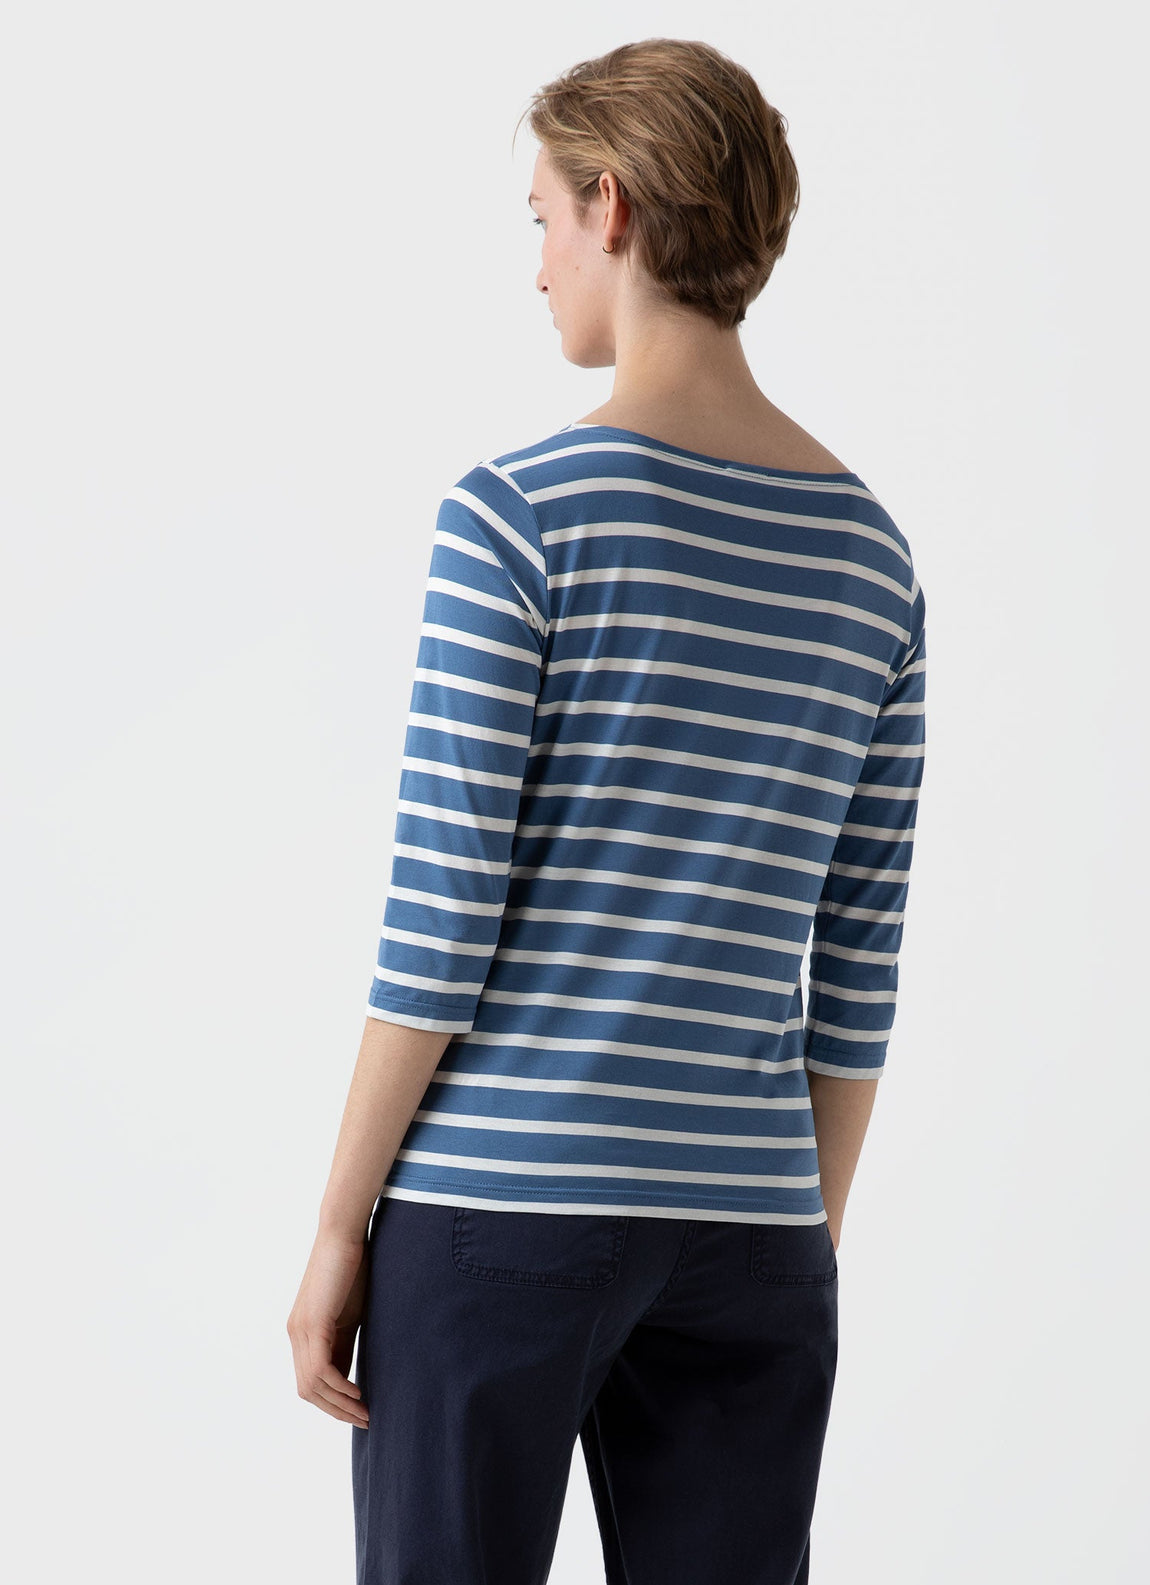 Women's Boat Neck T-shirt in Bluestone/Ecru Breton Stripe